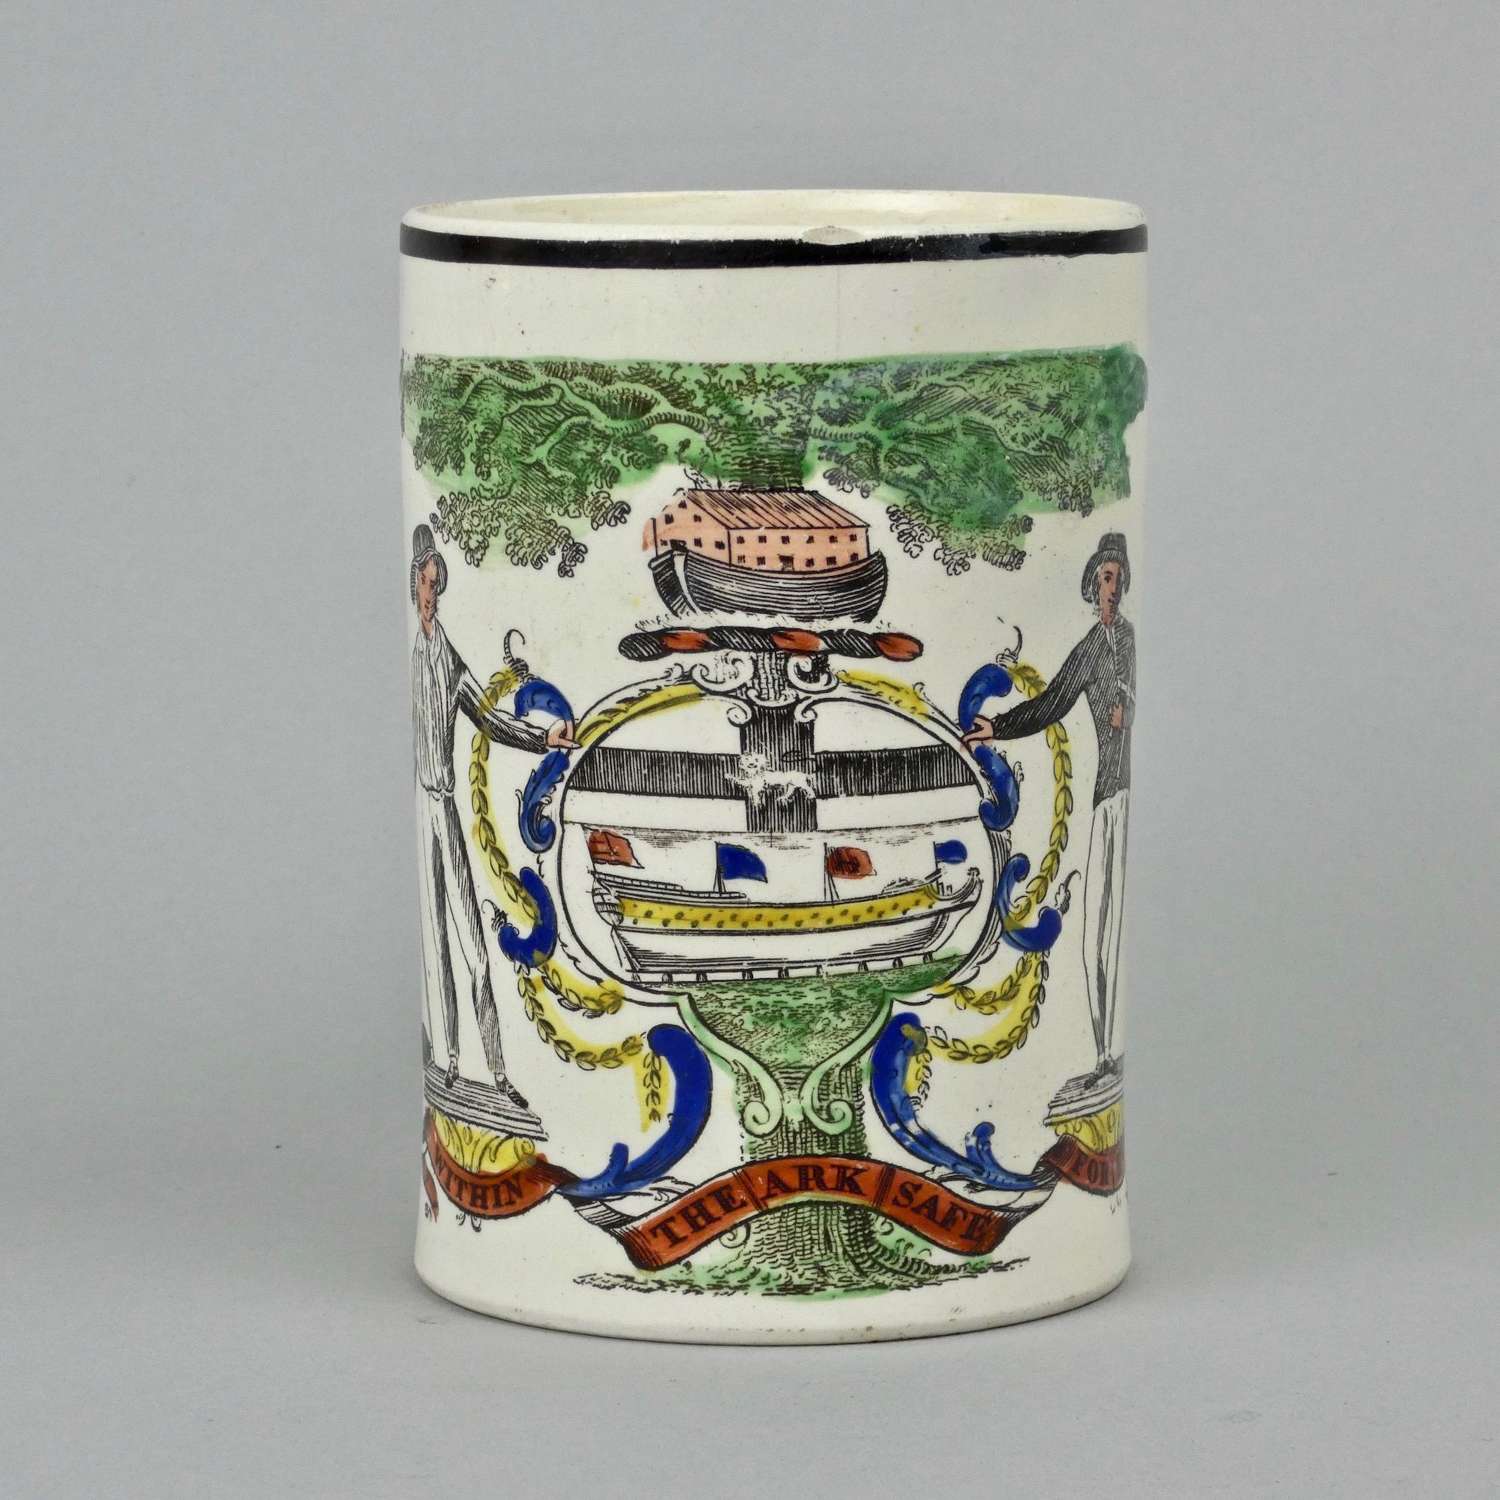 Rare, Shipwrights creamware mug